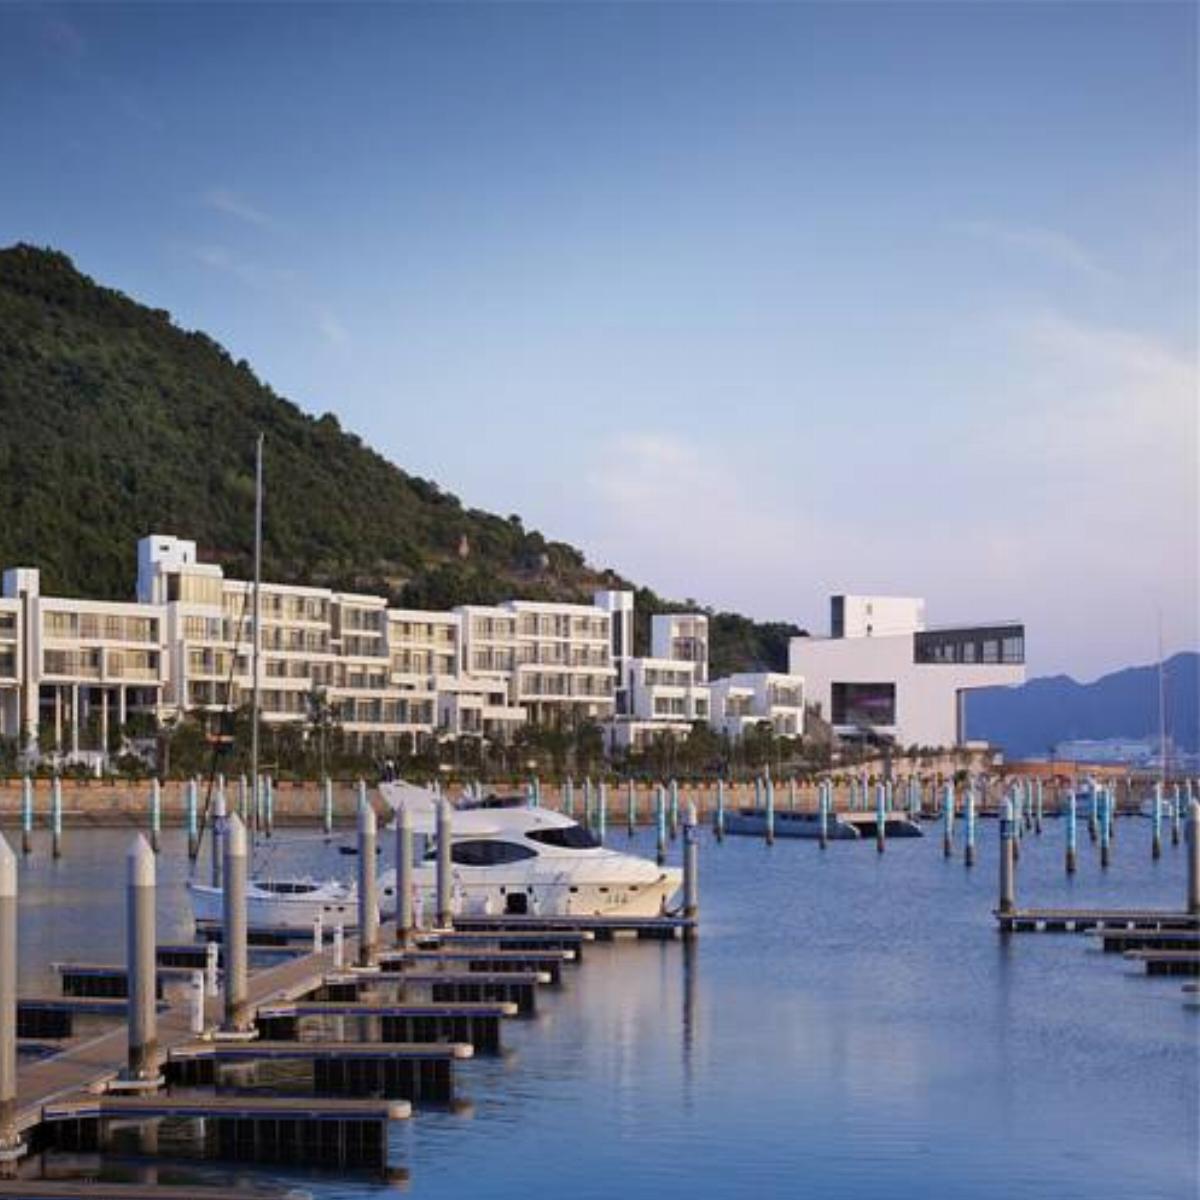 Qixing Bay White Sail Resort